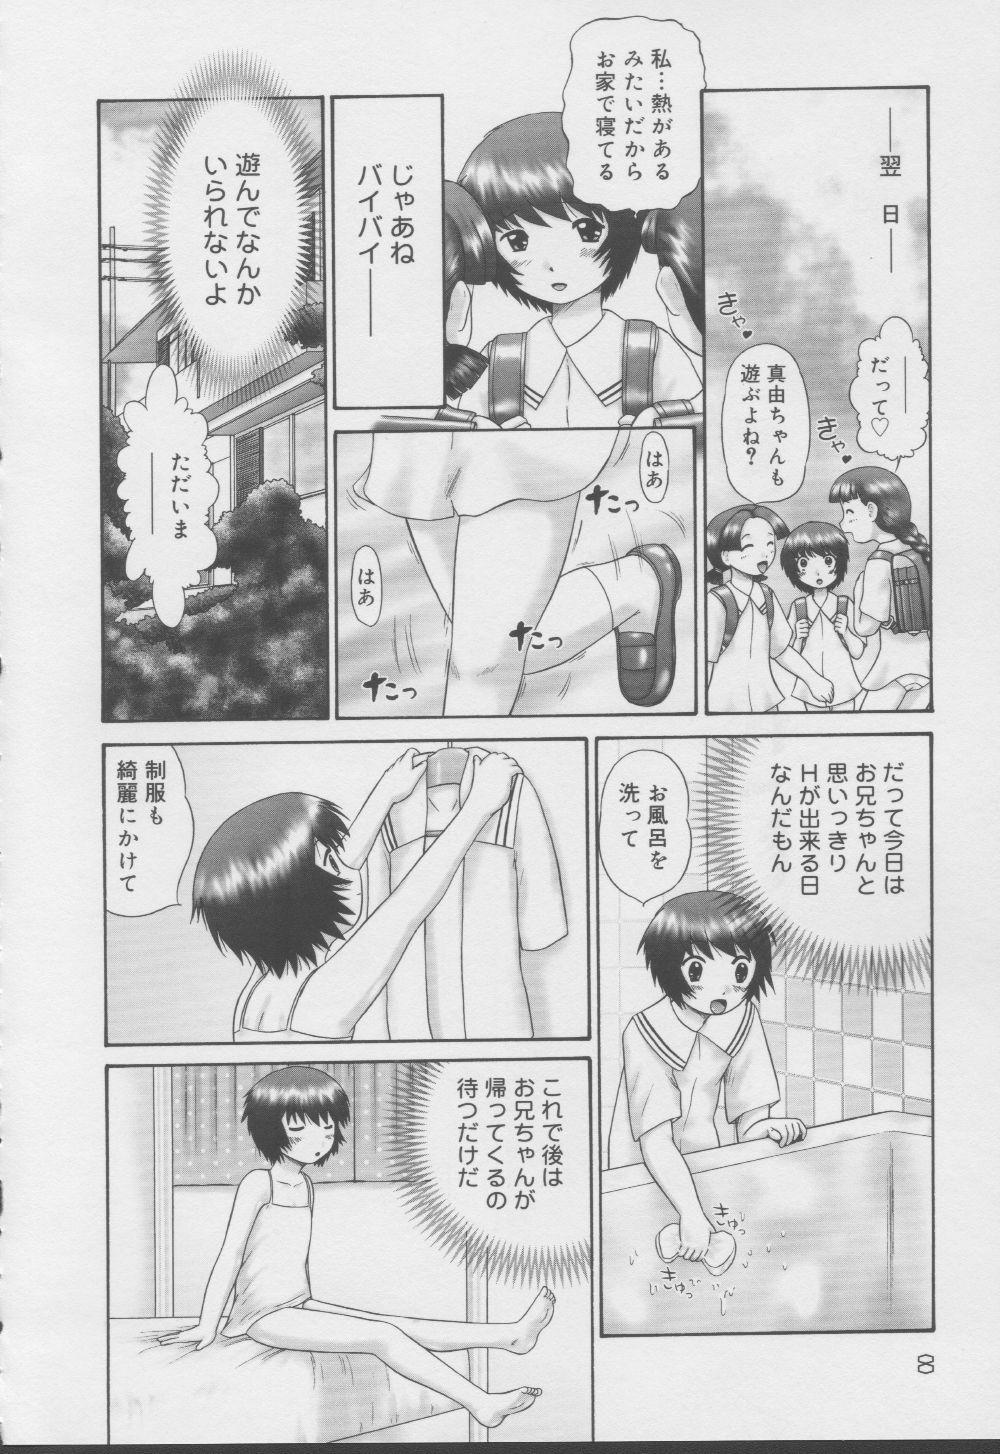 Exibicionismo Kazoku no Shisen Shisshiki 2 Hardcore Sex - Page 8